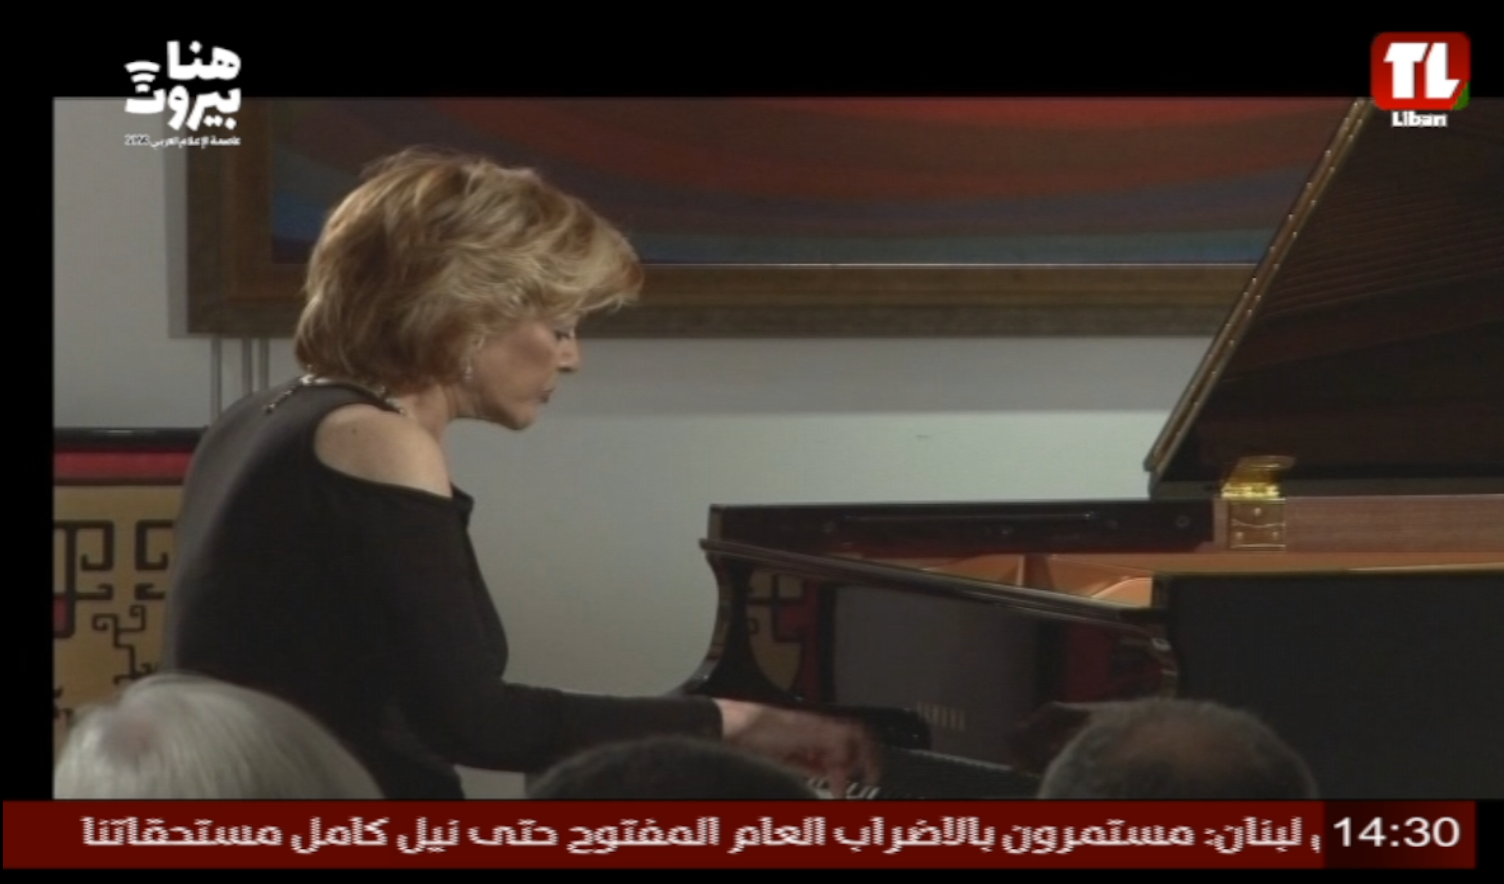 لقطة شاشة توثق انقطاع البث عن تلفزيون لبنان